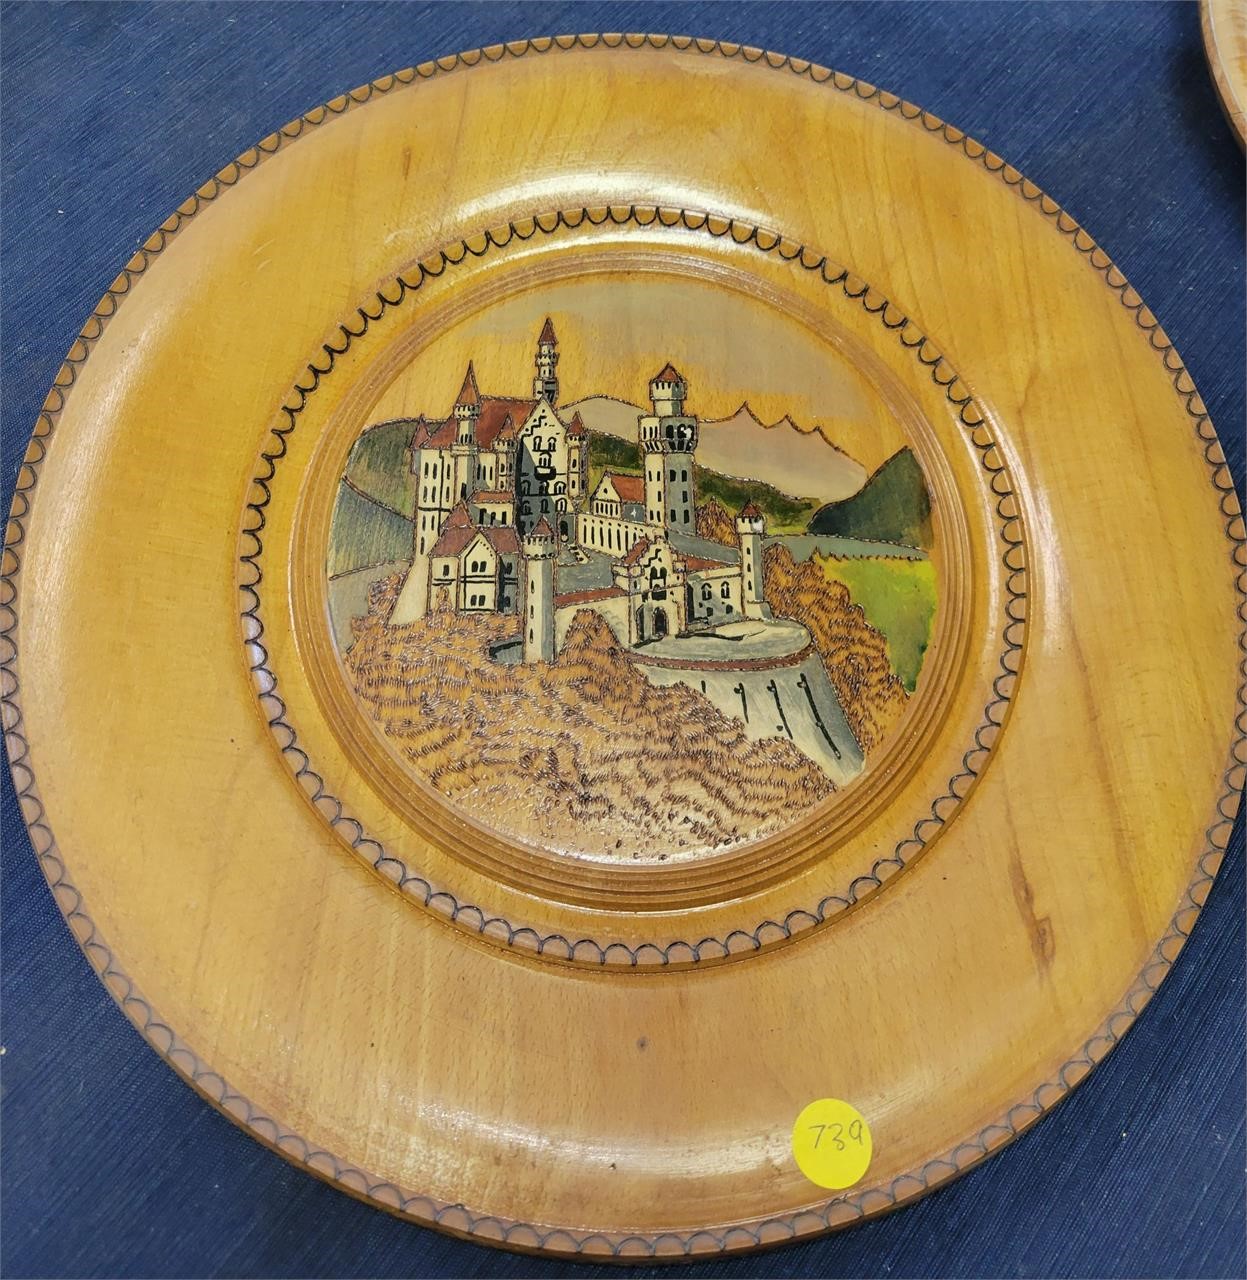 Wooden Neuschwentein Castle Plate From Germany